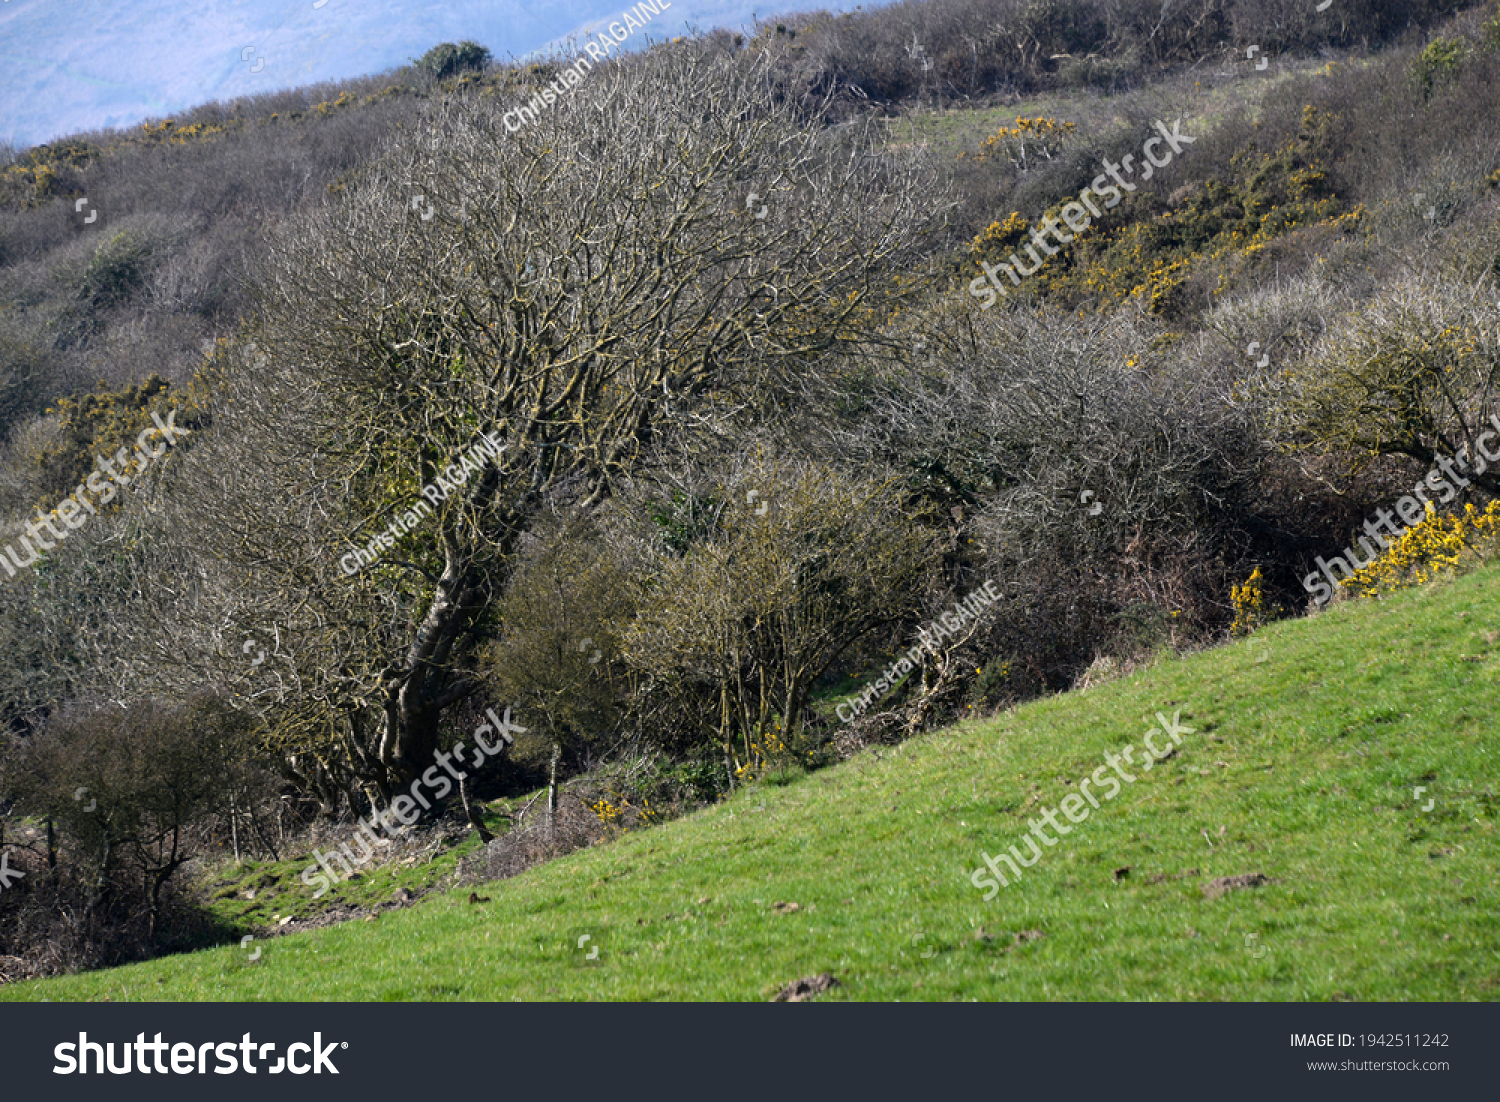 Old tree bent to the wind and slope of the terrain. Vieil arbre courbé au vent et à la pente du terrain. #1942511242